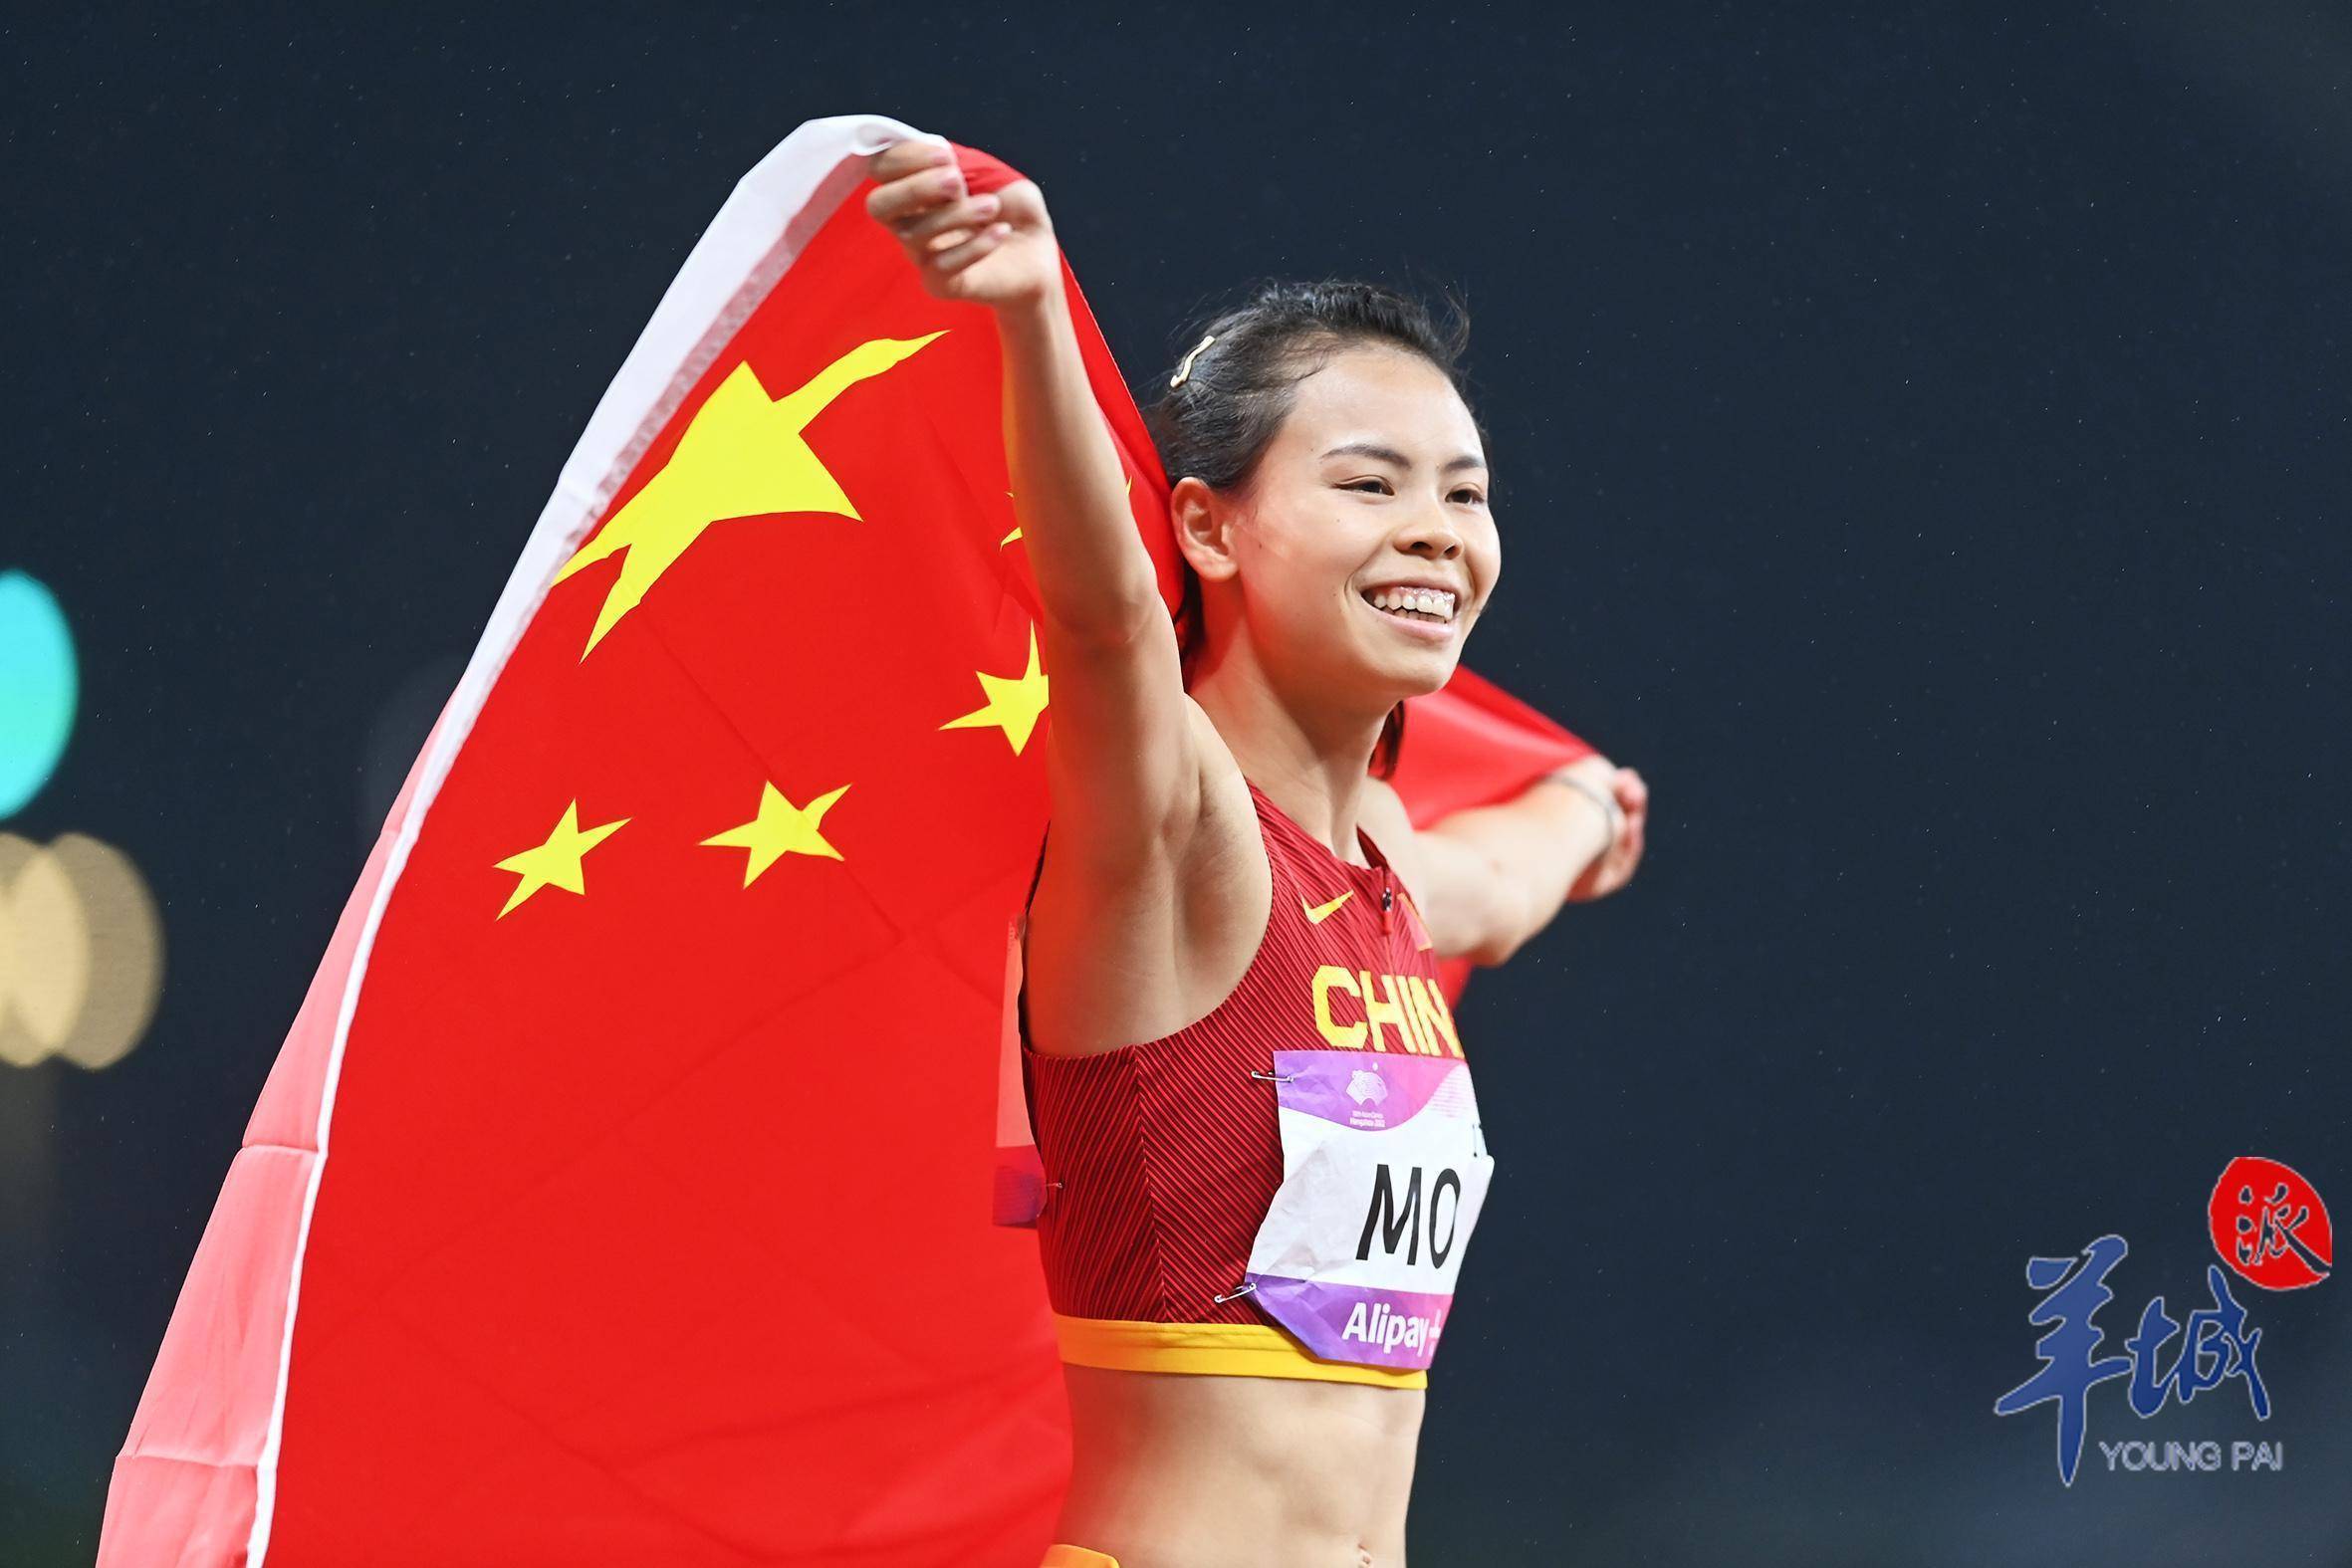 10月3日,杭州亚运会女子400米栏决赛上,中国选手莫家蝶以55秒01的成绩